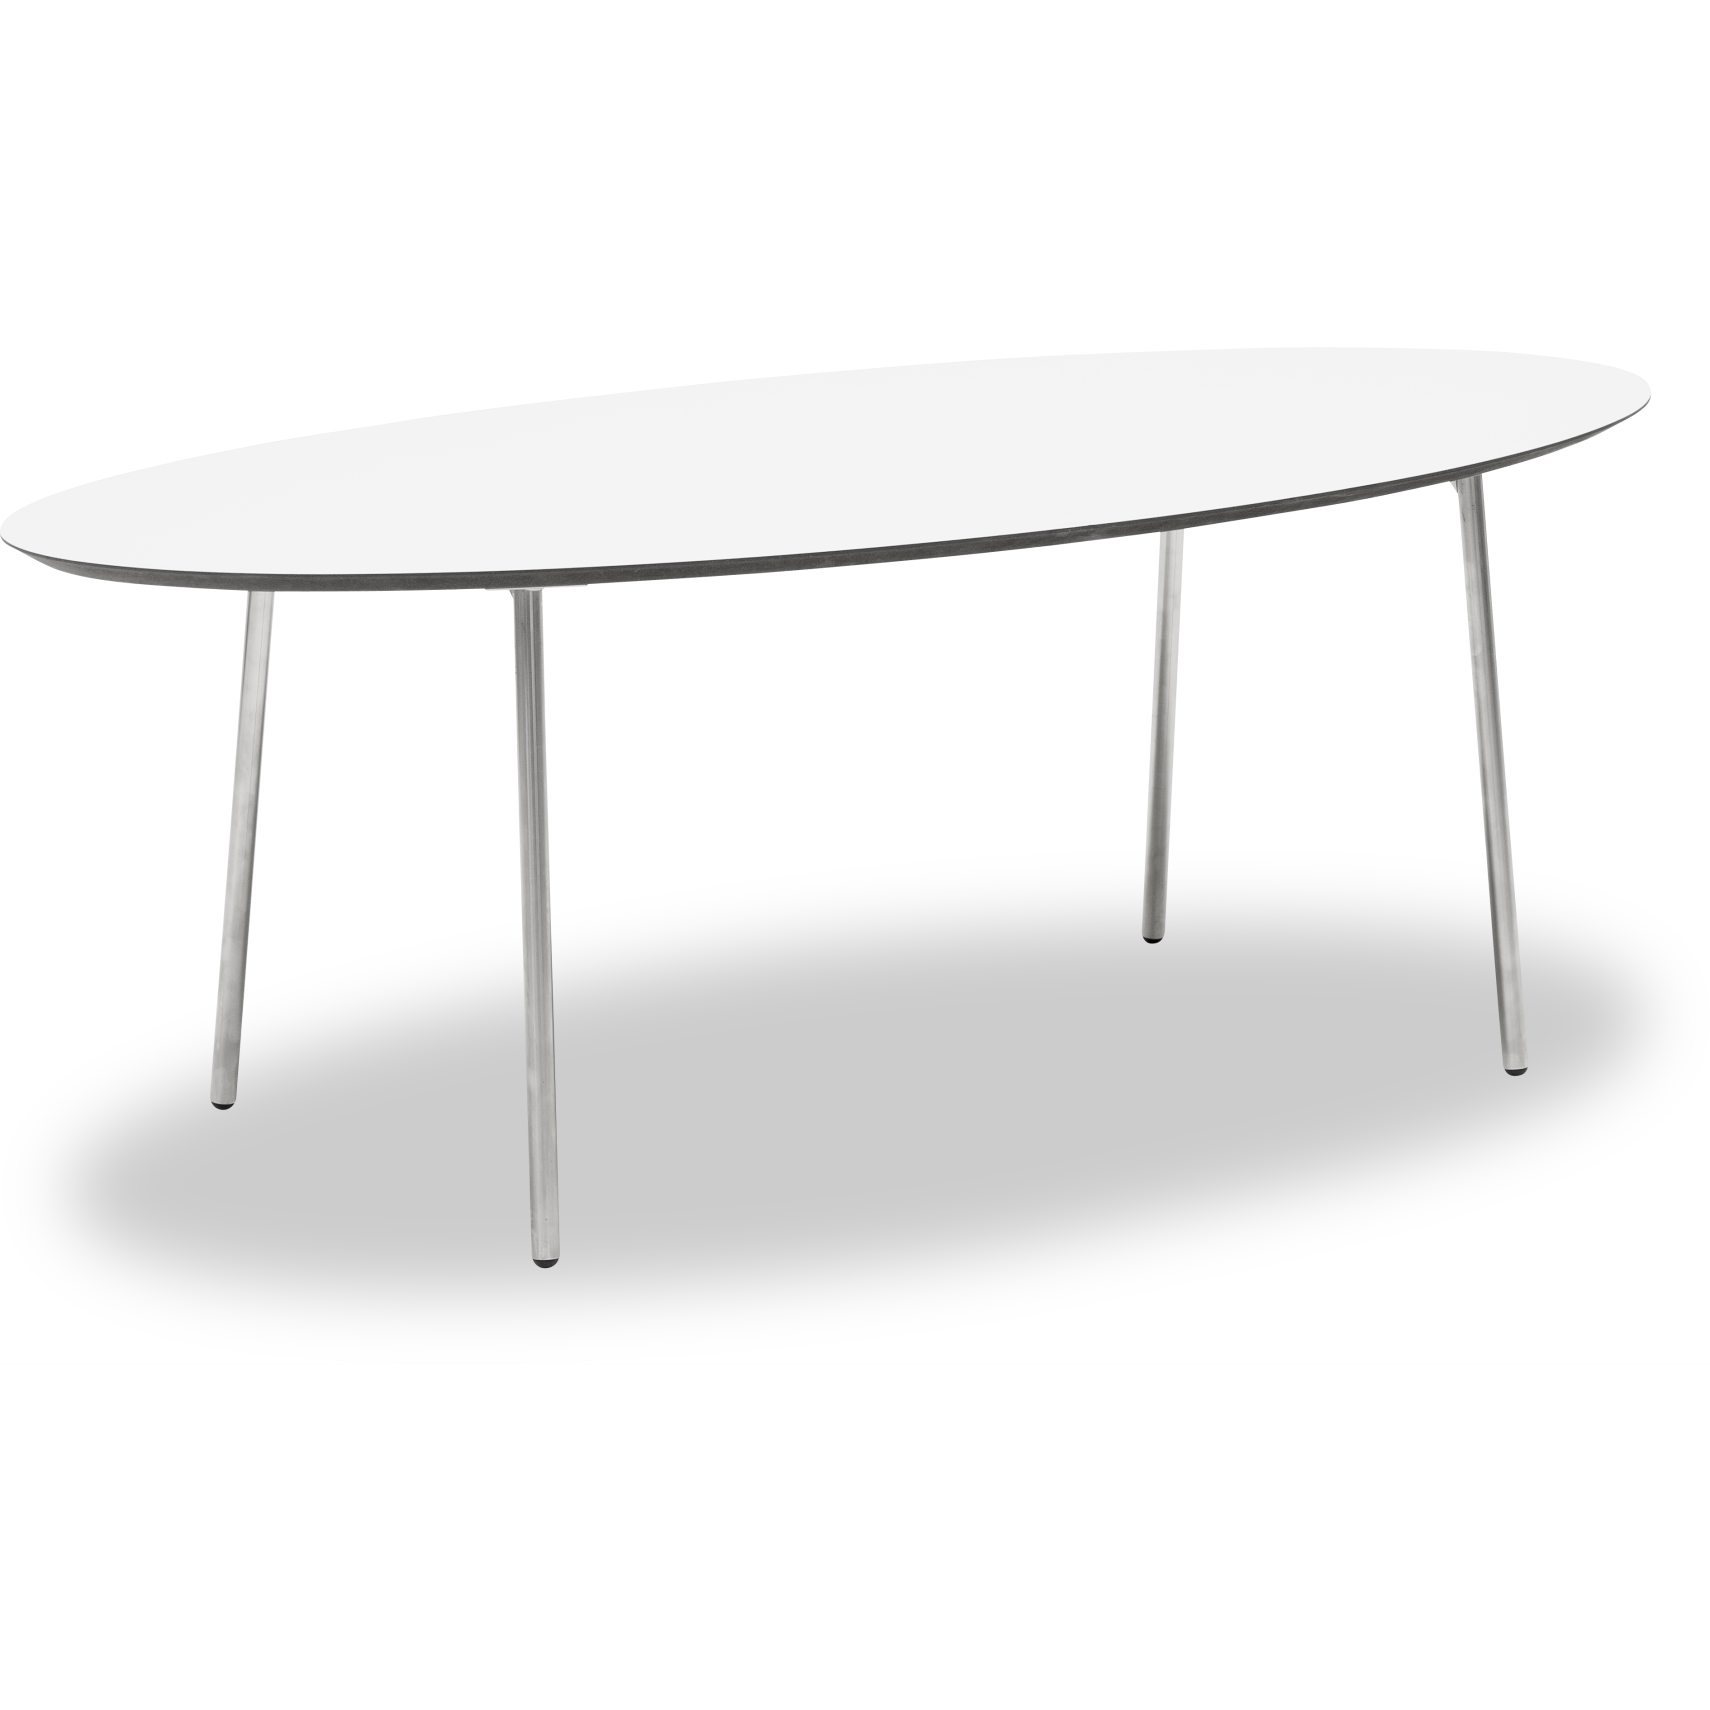 Spark Sofabord 139 x 50 x 63 cm - Laminat Hvid, sort kant MDF og ben i børstet stål.